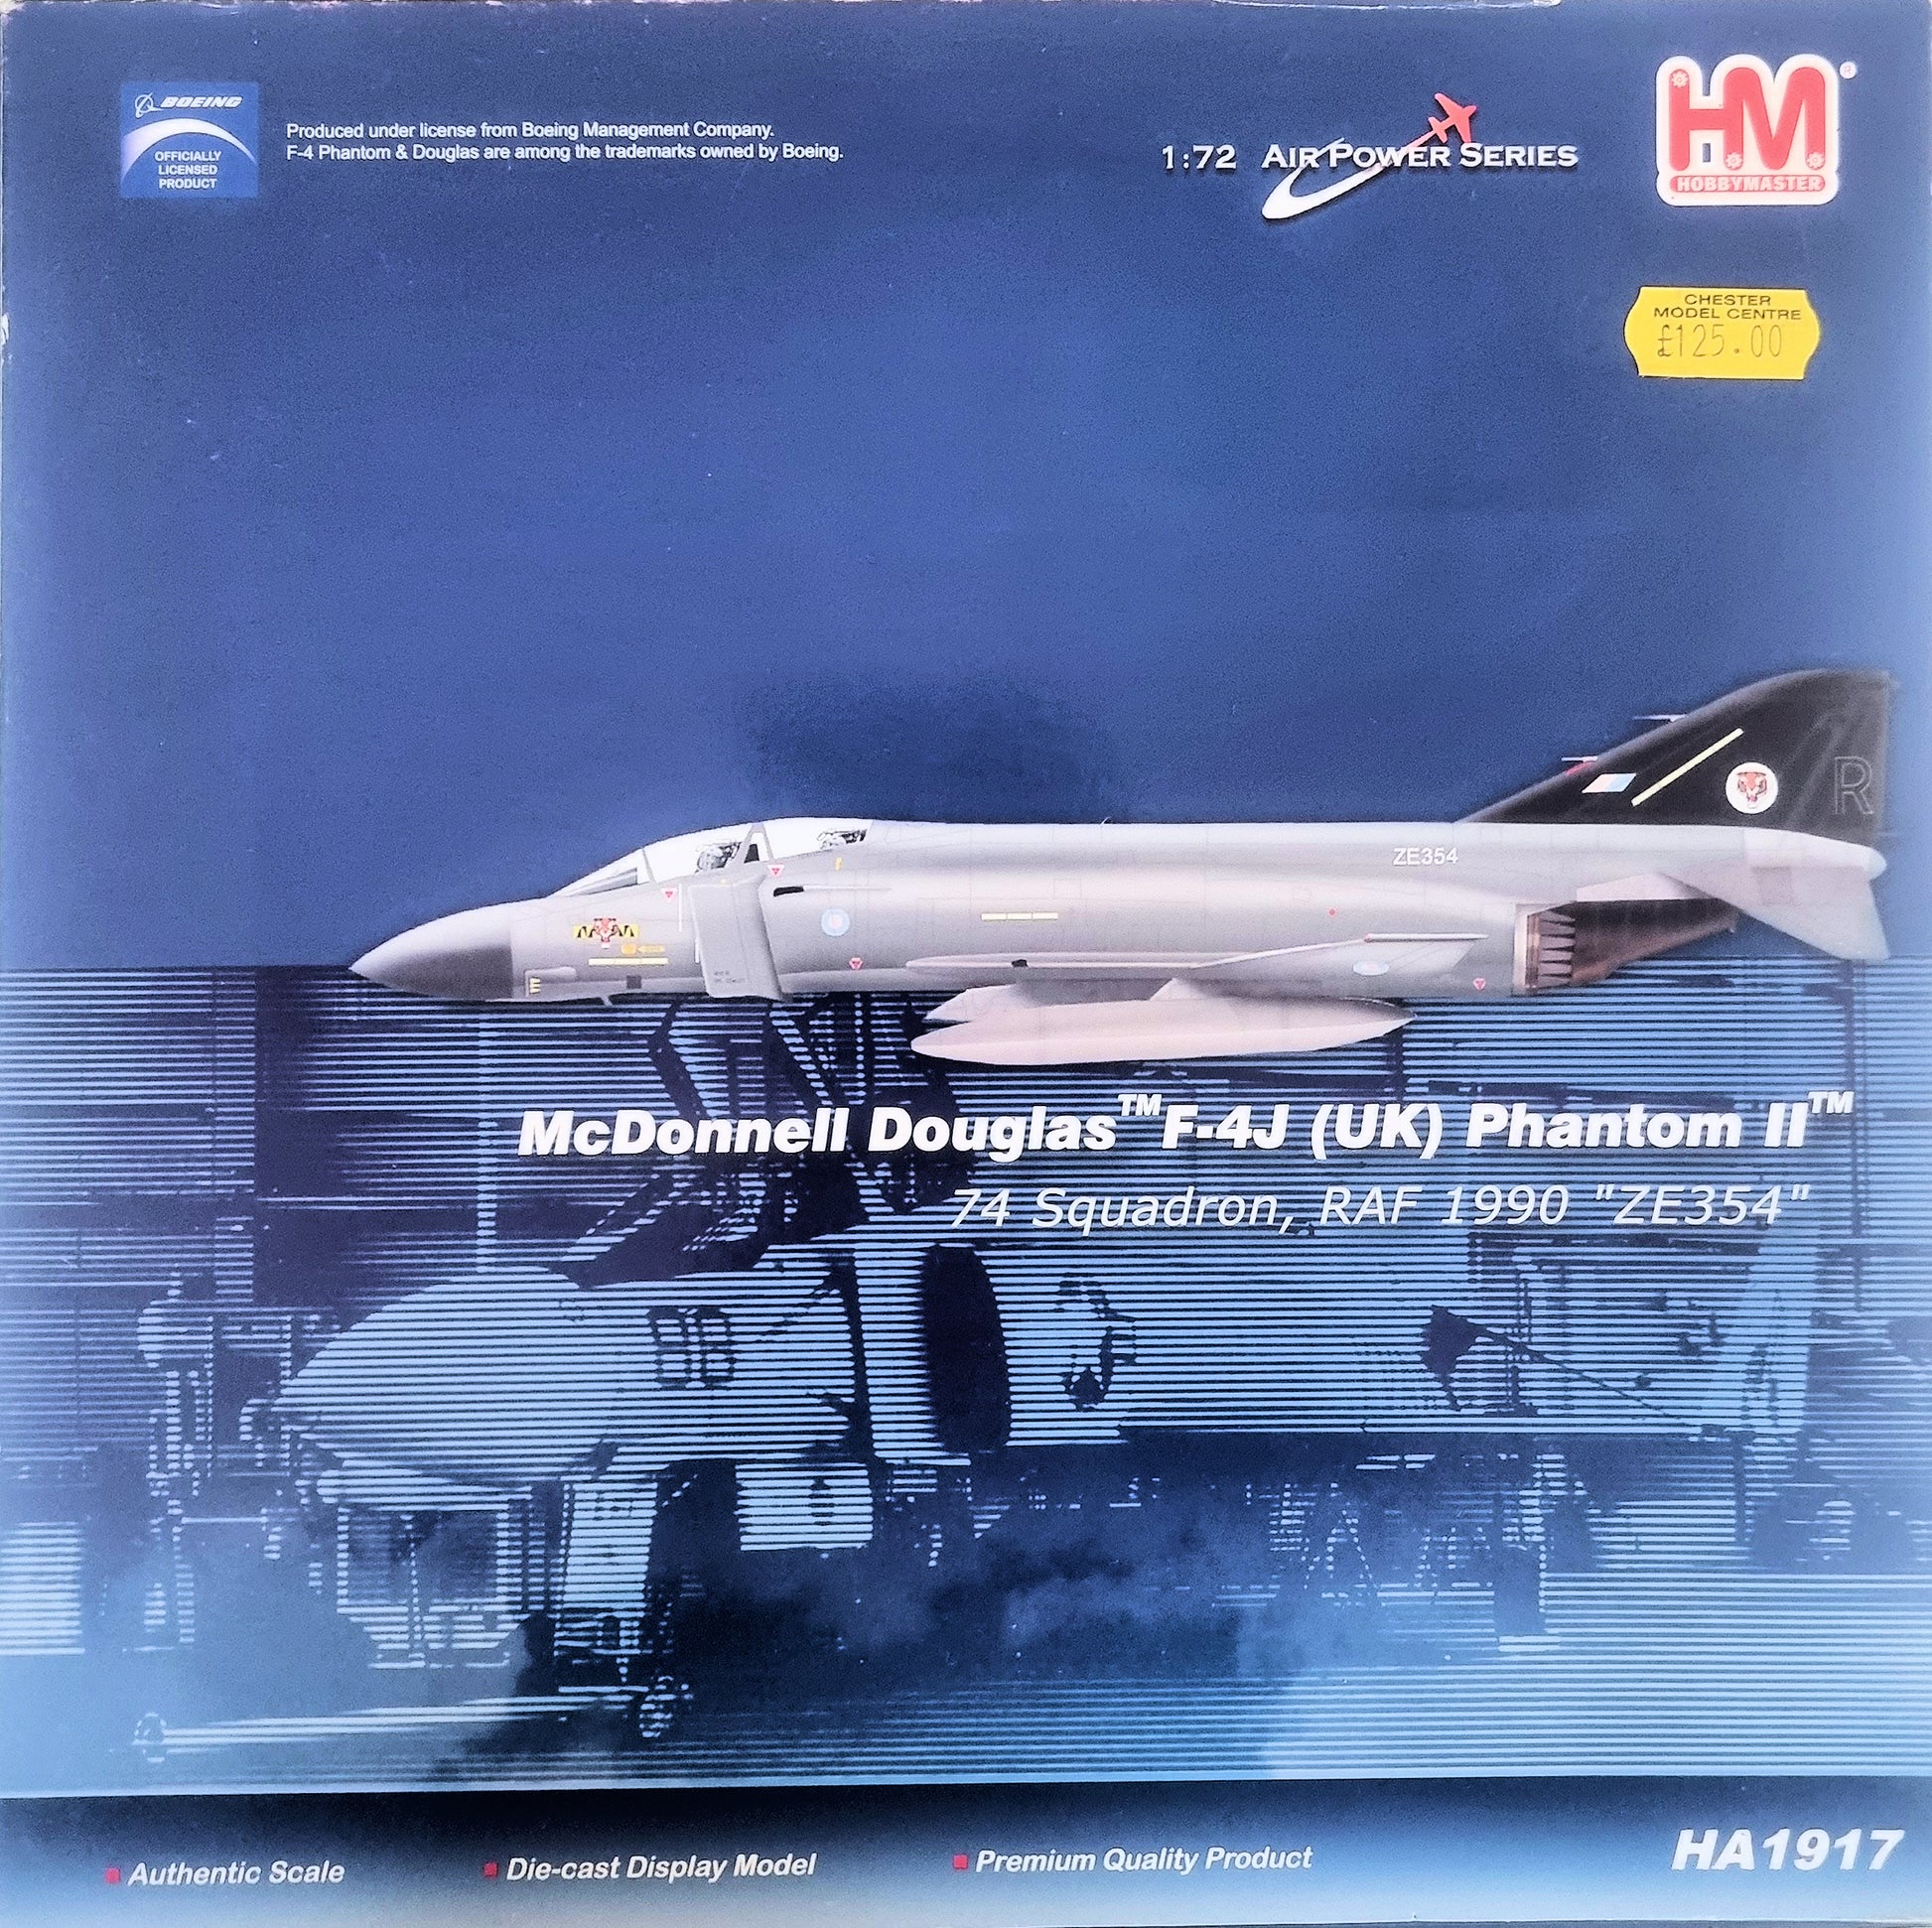 Hobbymaster 1:72 Air Power Series McDonnell Douglas F-4J (UK) Phantom II HA1917 - Chester Model Centre